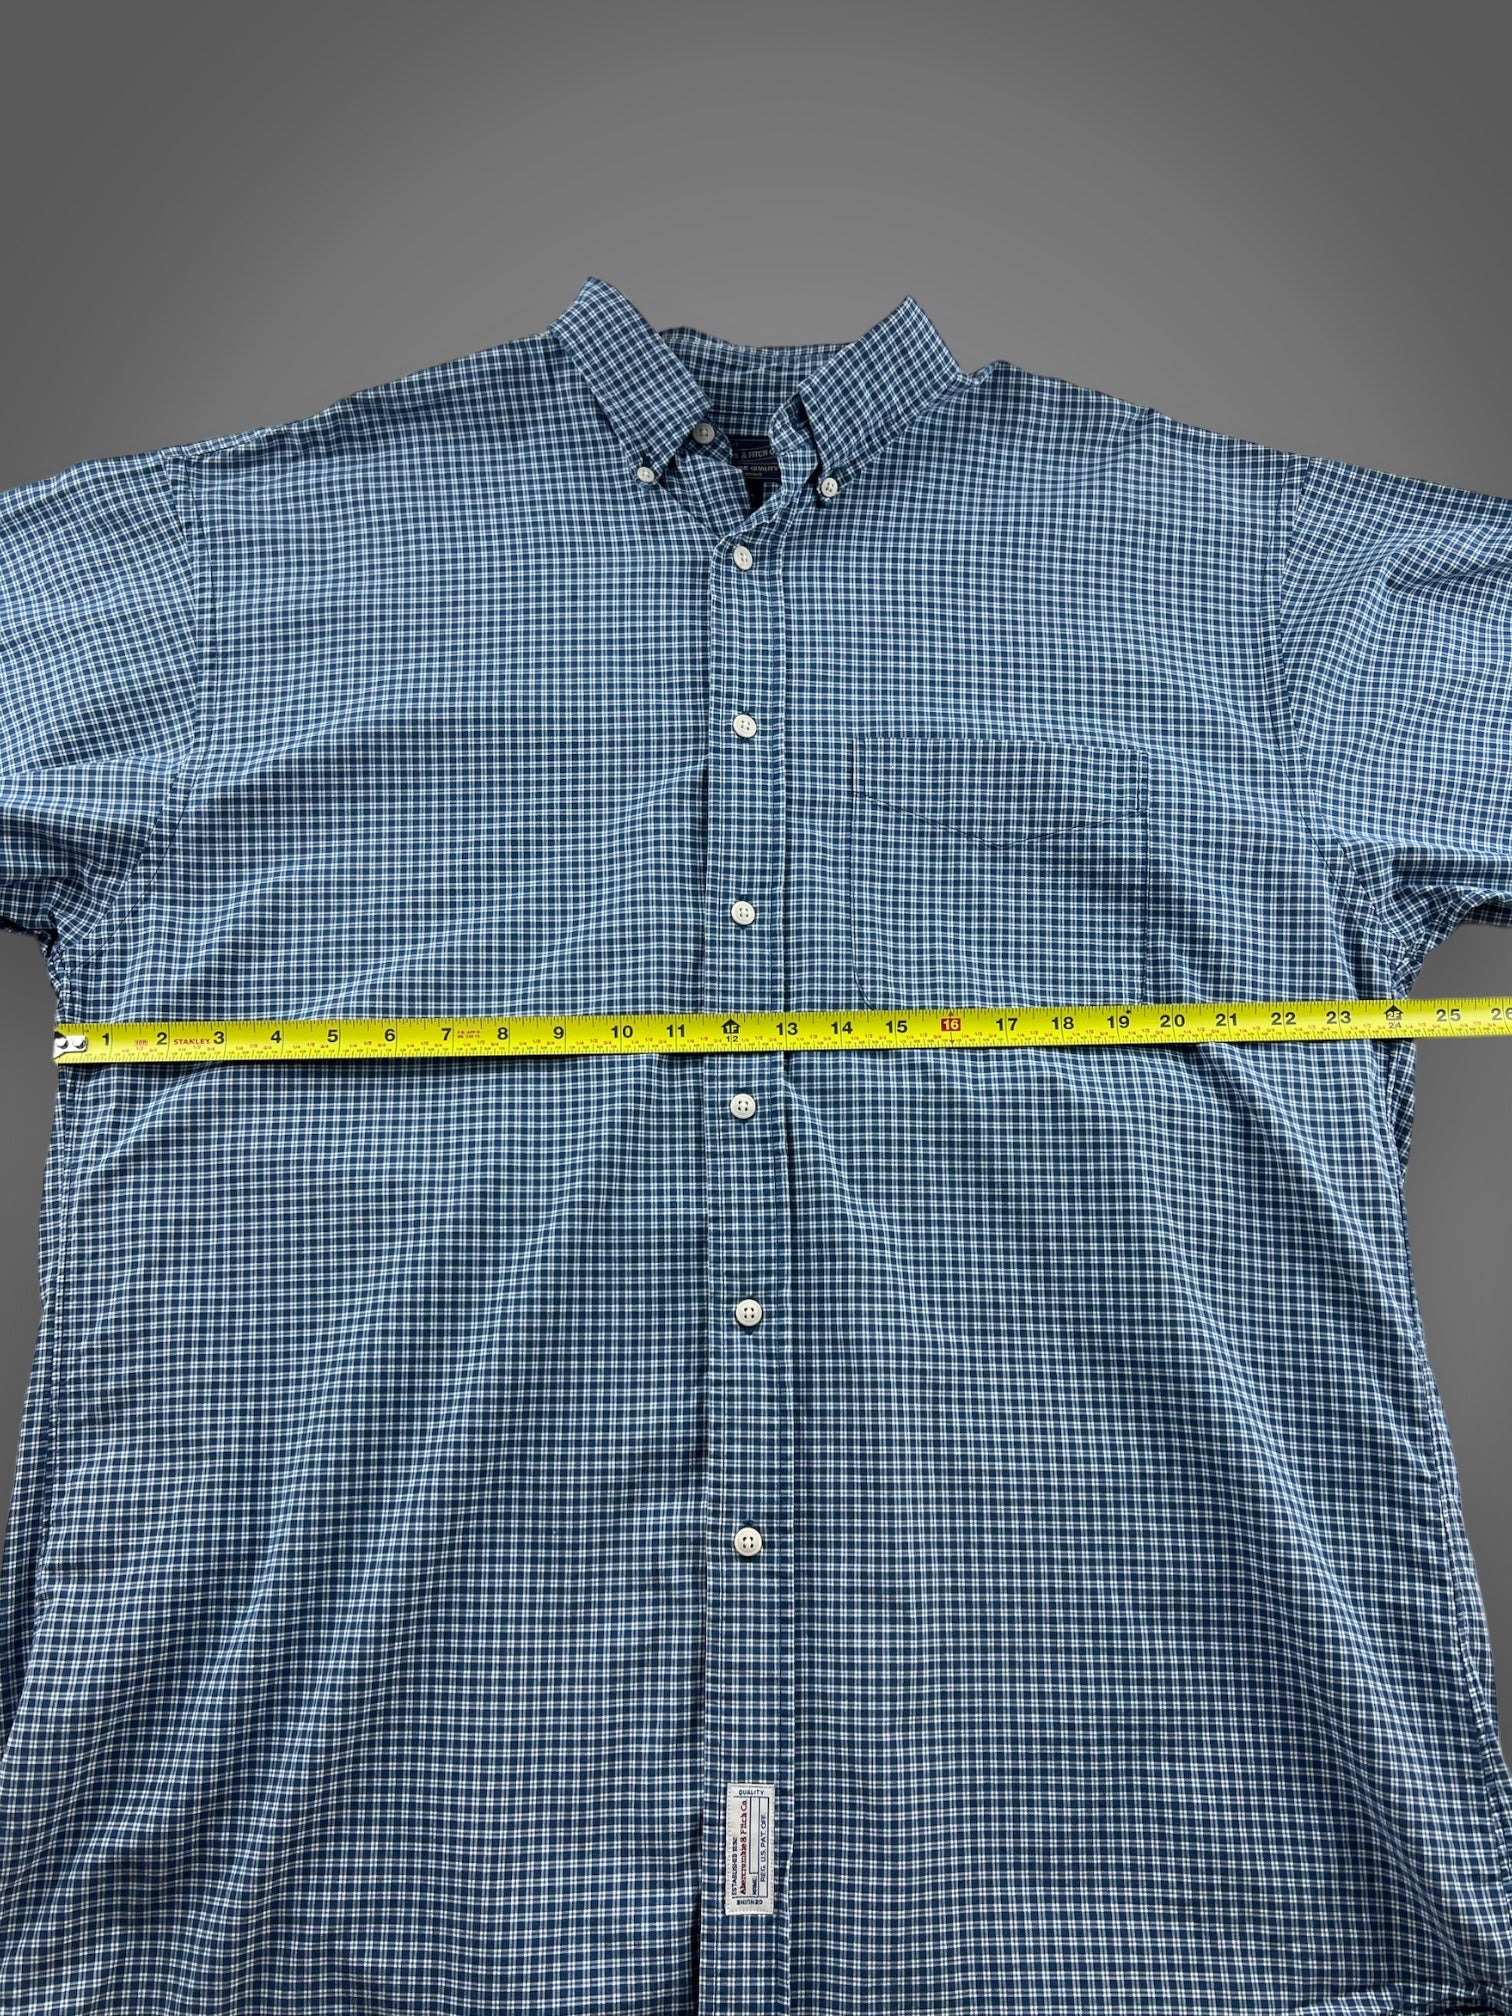 00s Abercrombie plaid button down shirt XL